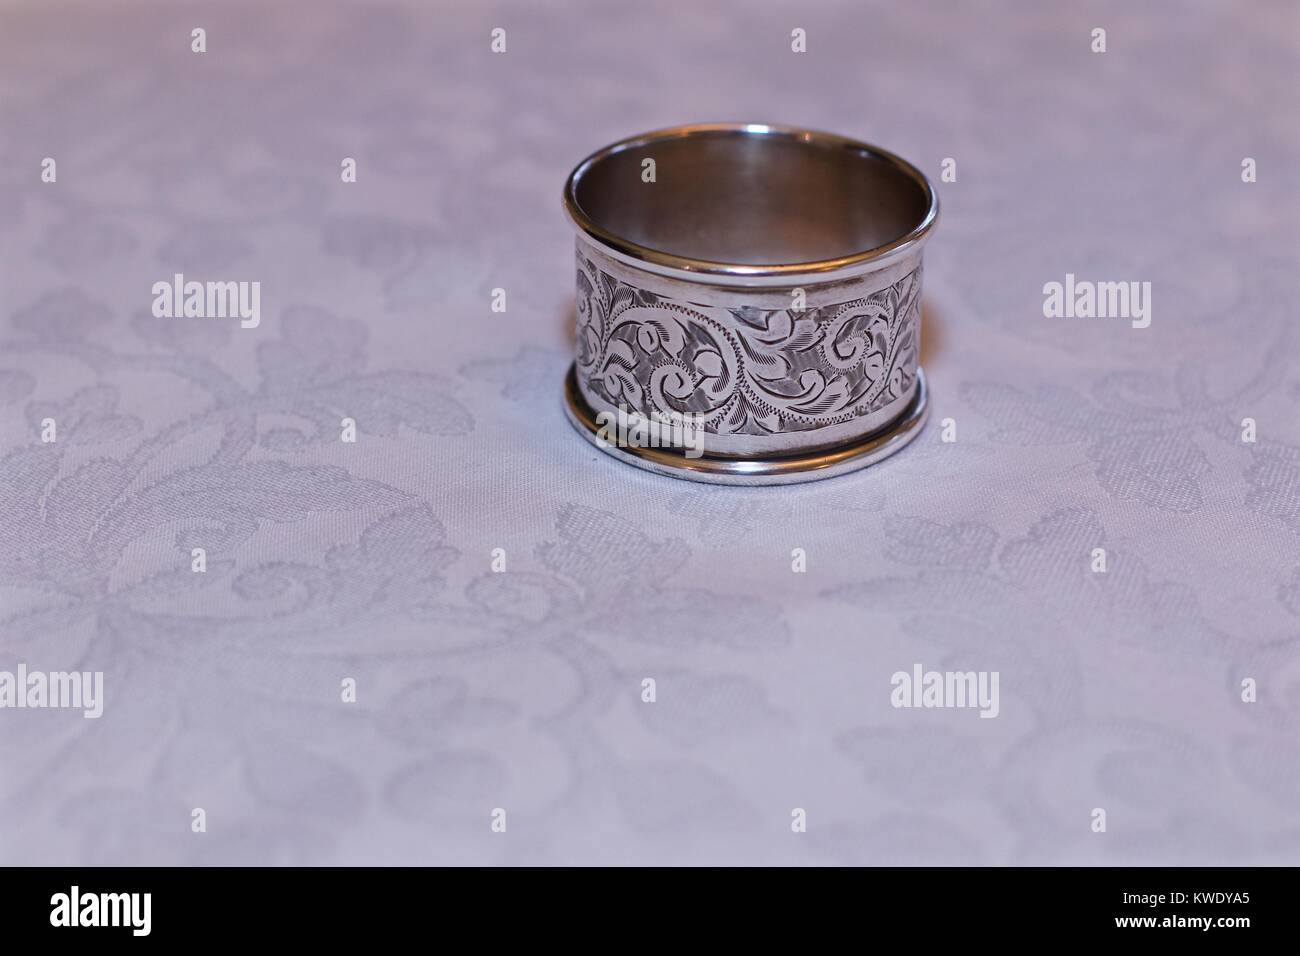 Kunstvolle Servietten Ring auf einem weiß-gemusterte Tischdecke Stockfoto